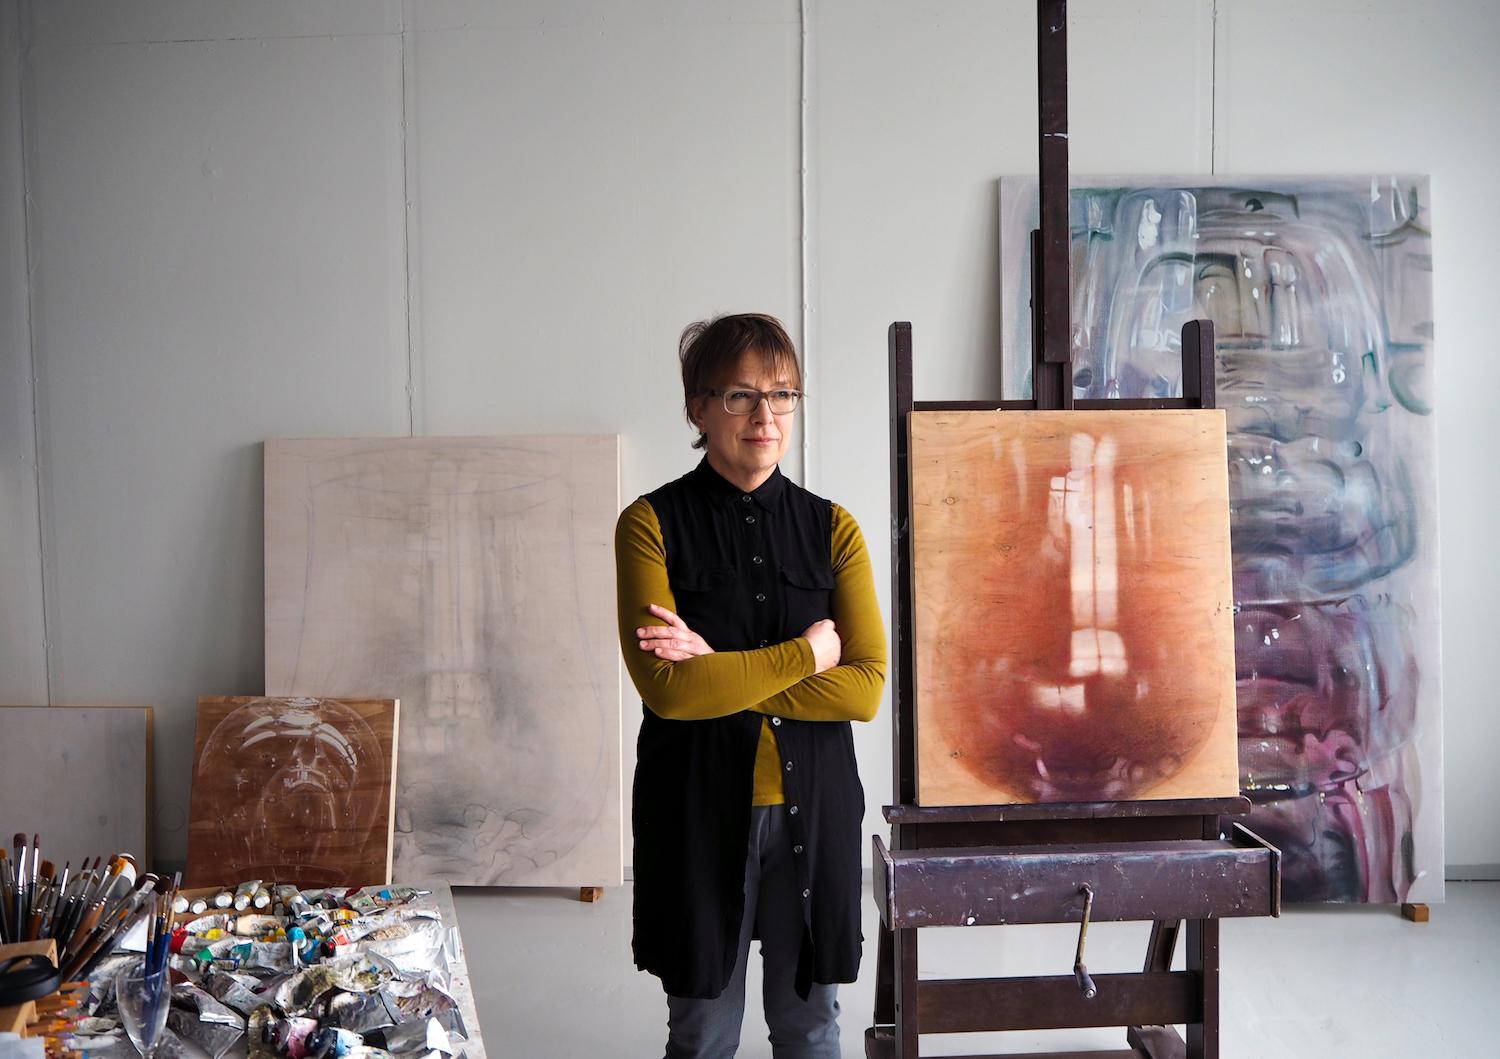 Kuvataiteilija Susanne Gottberg seisoo työhuoneessaan maalausten ympäröimänä.